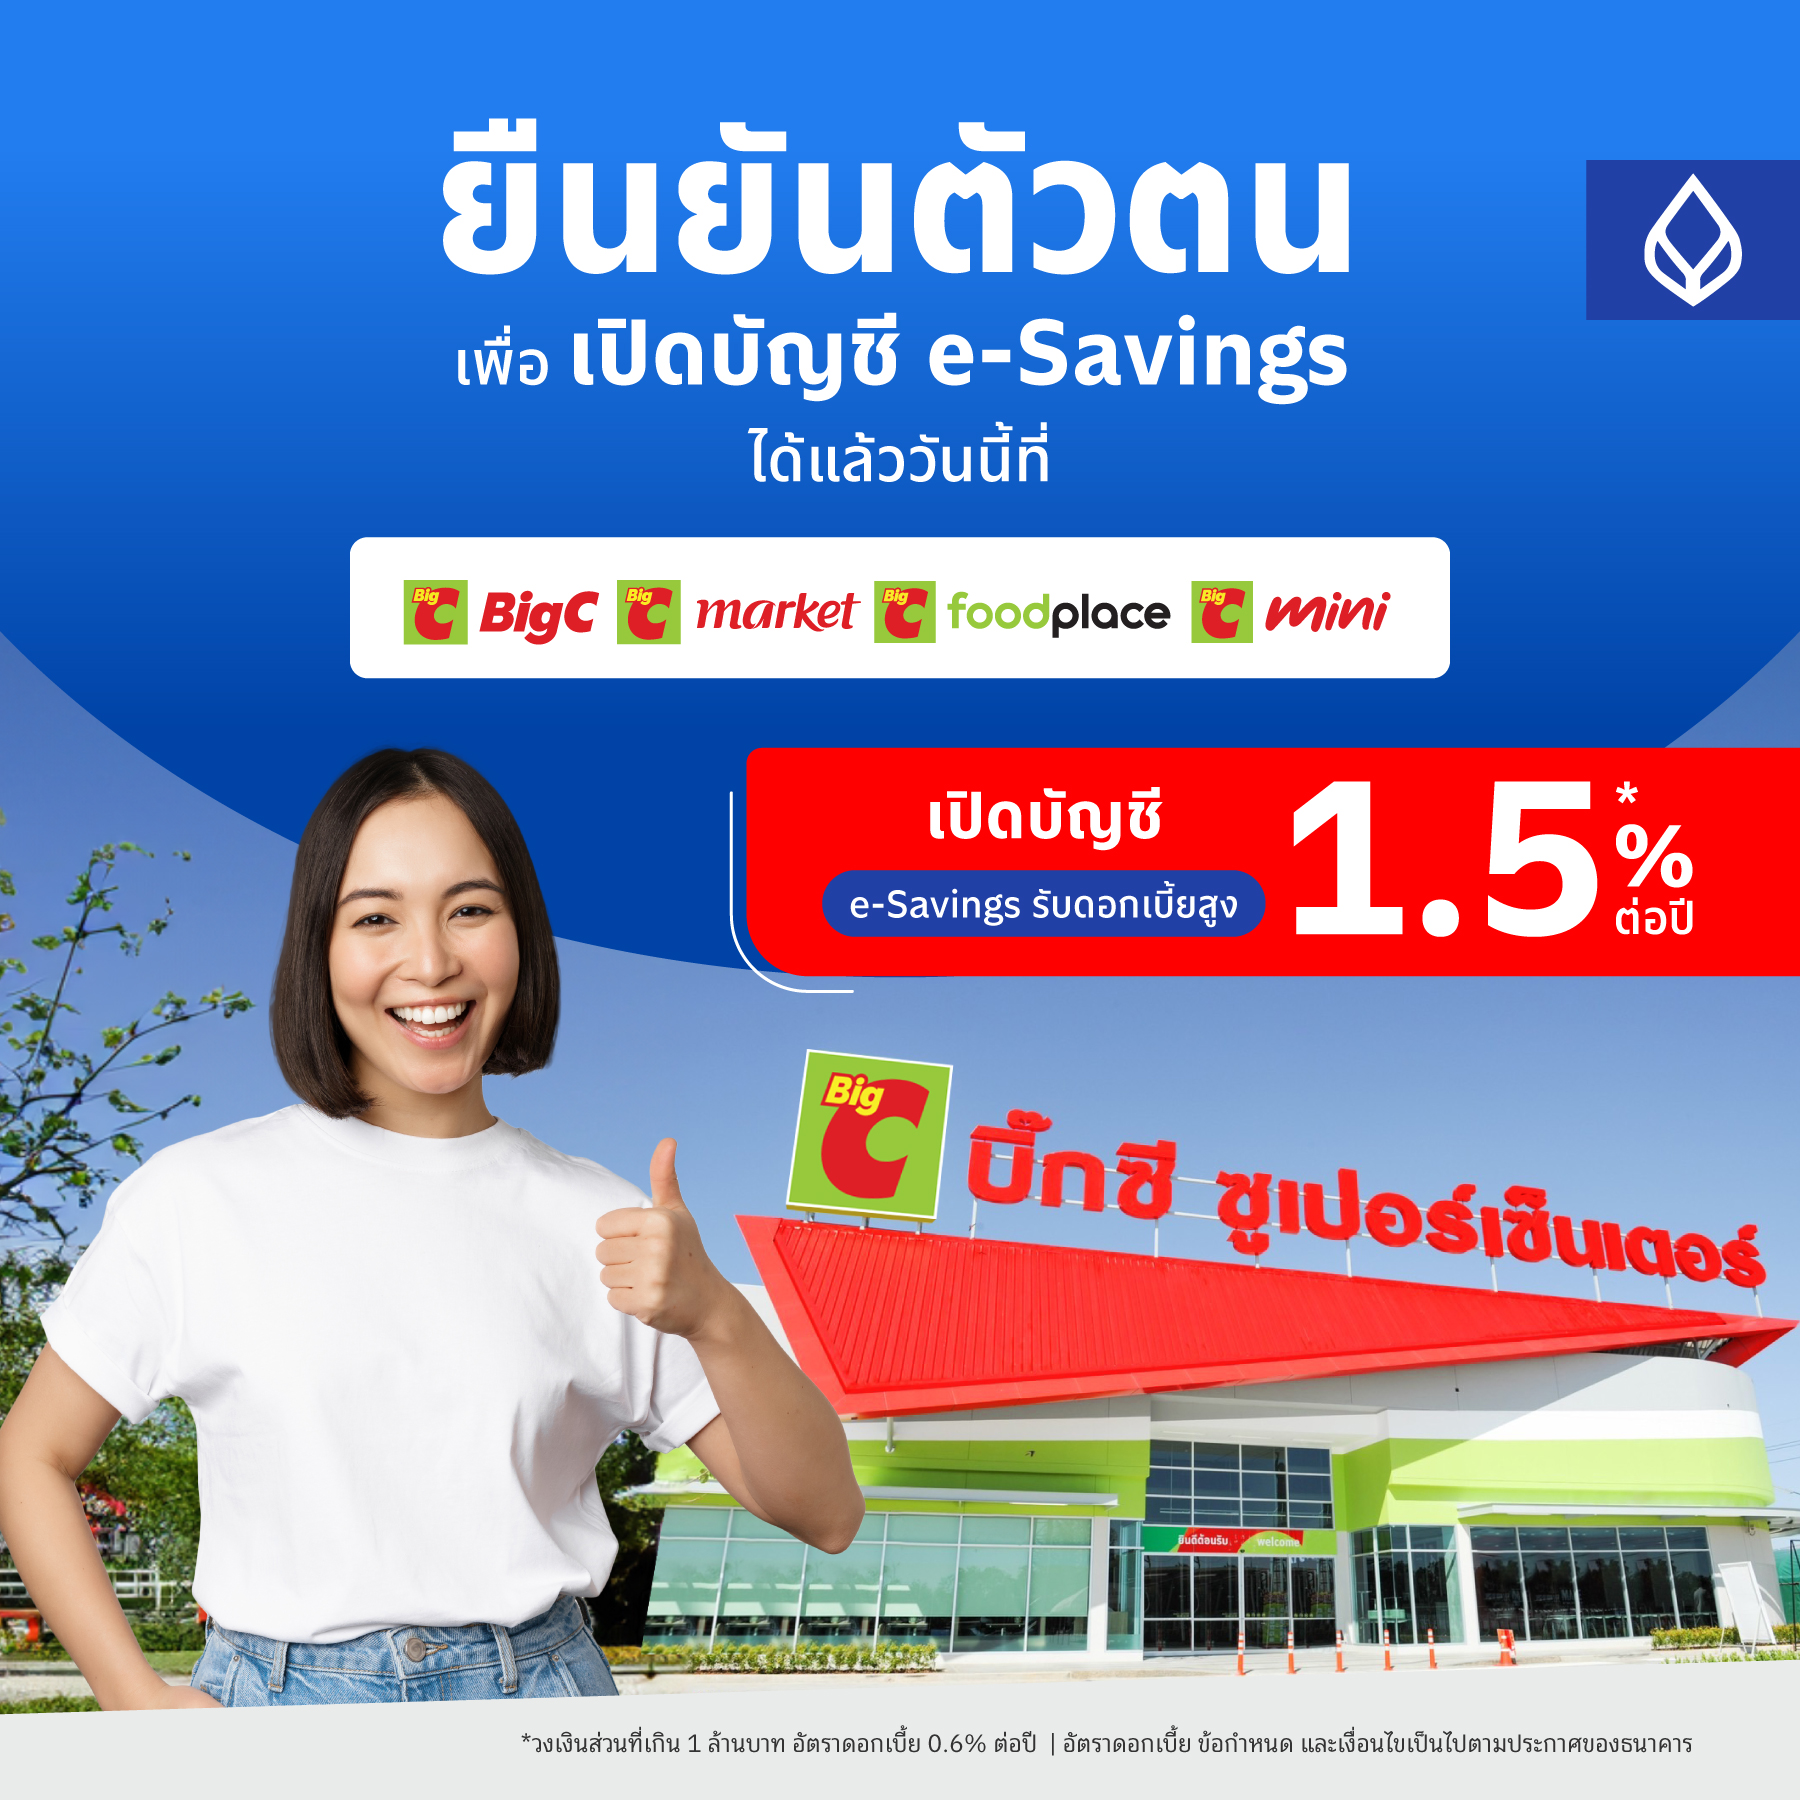 ธนาคารกรุงเทพ X Big C พร้อมบริการ “ยืนยันตัวตน Be My Id” เพื่อเปิดบัญชีได้แล้ววันนี้!  - Thaipublica